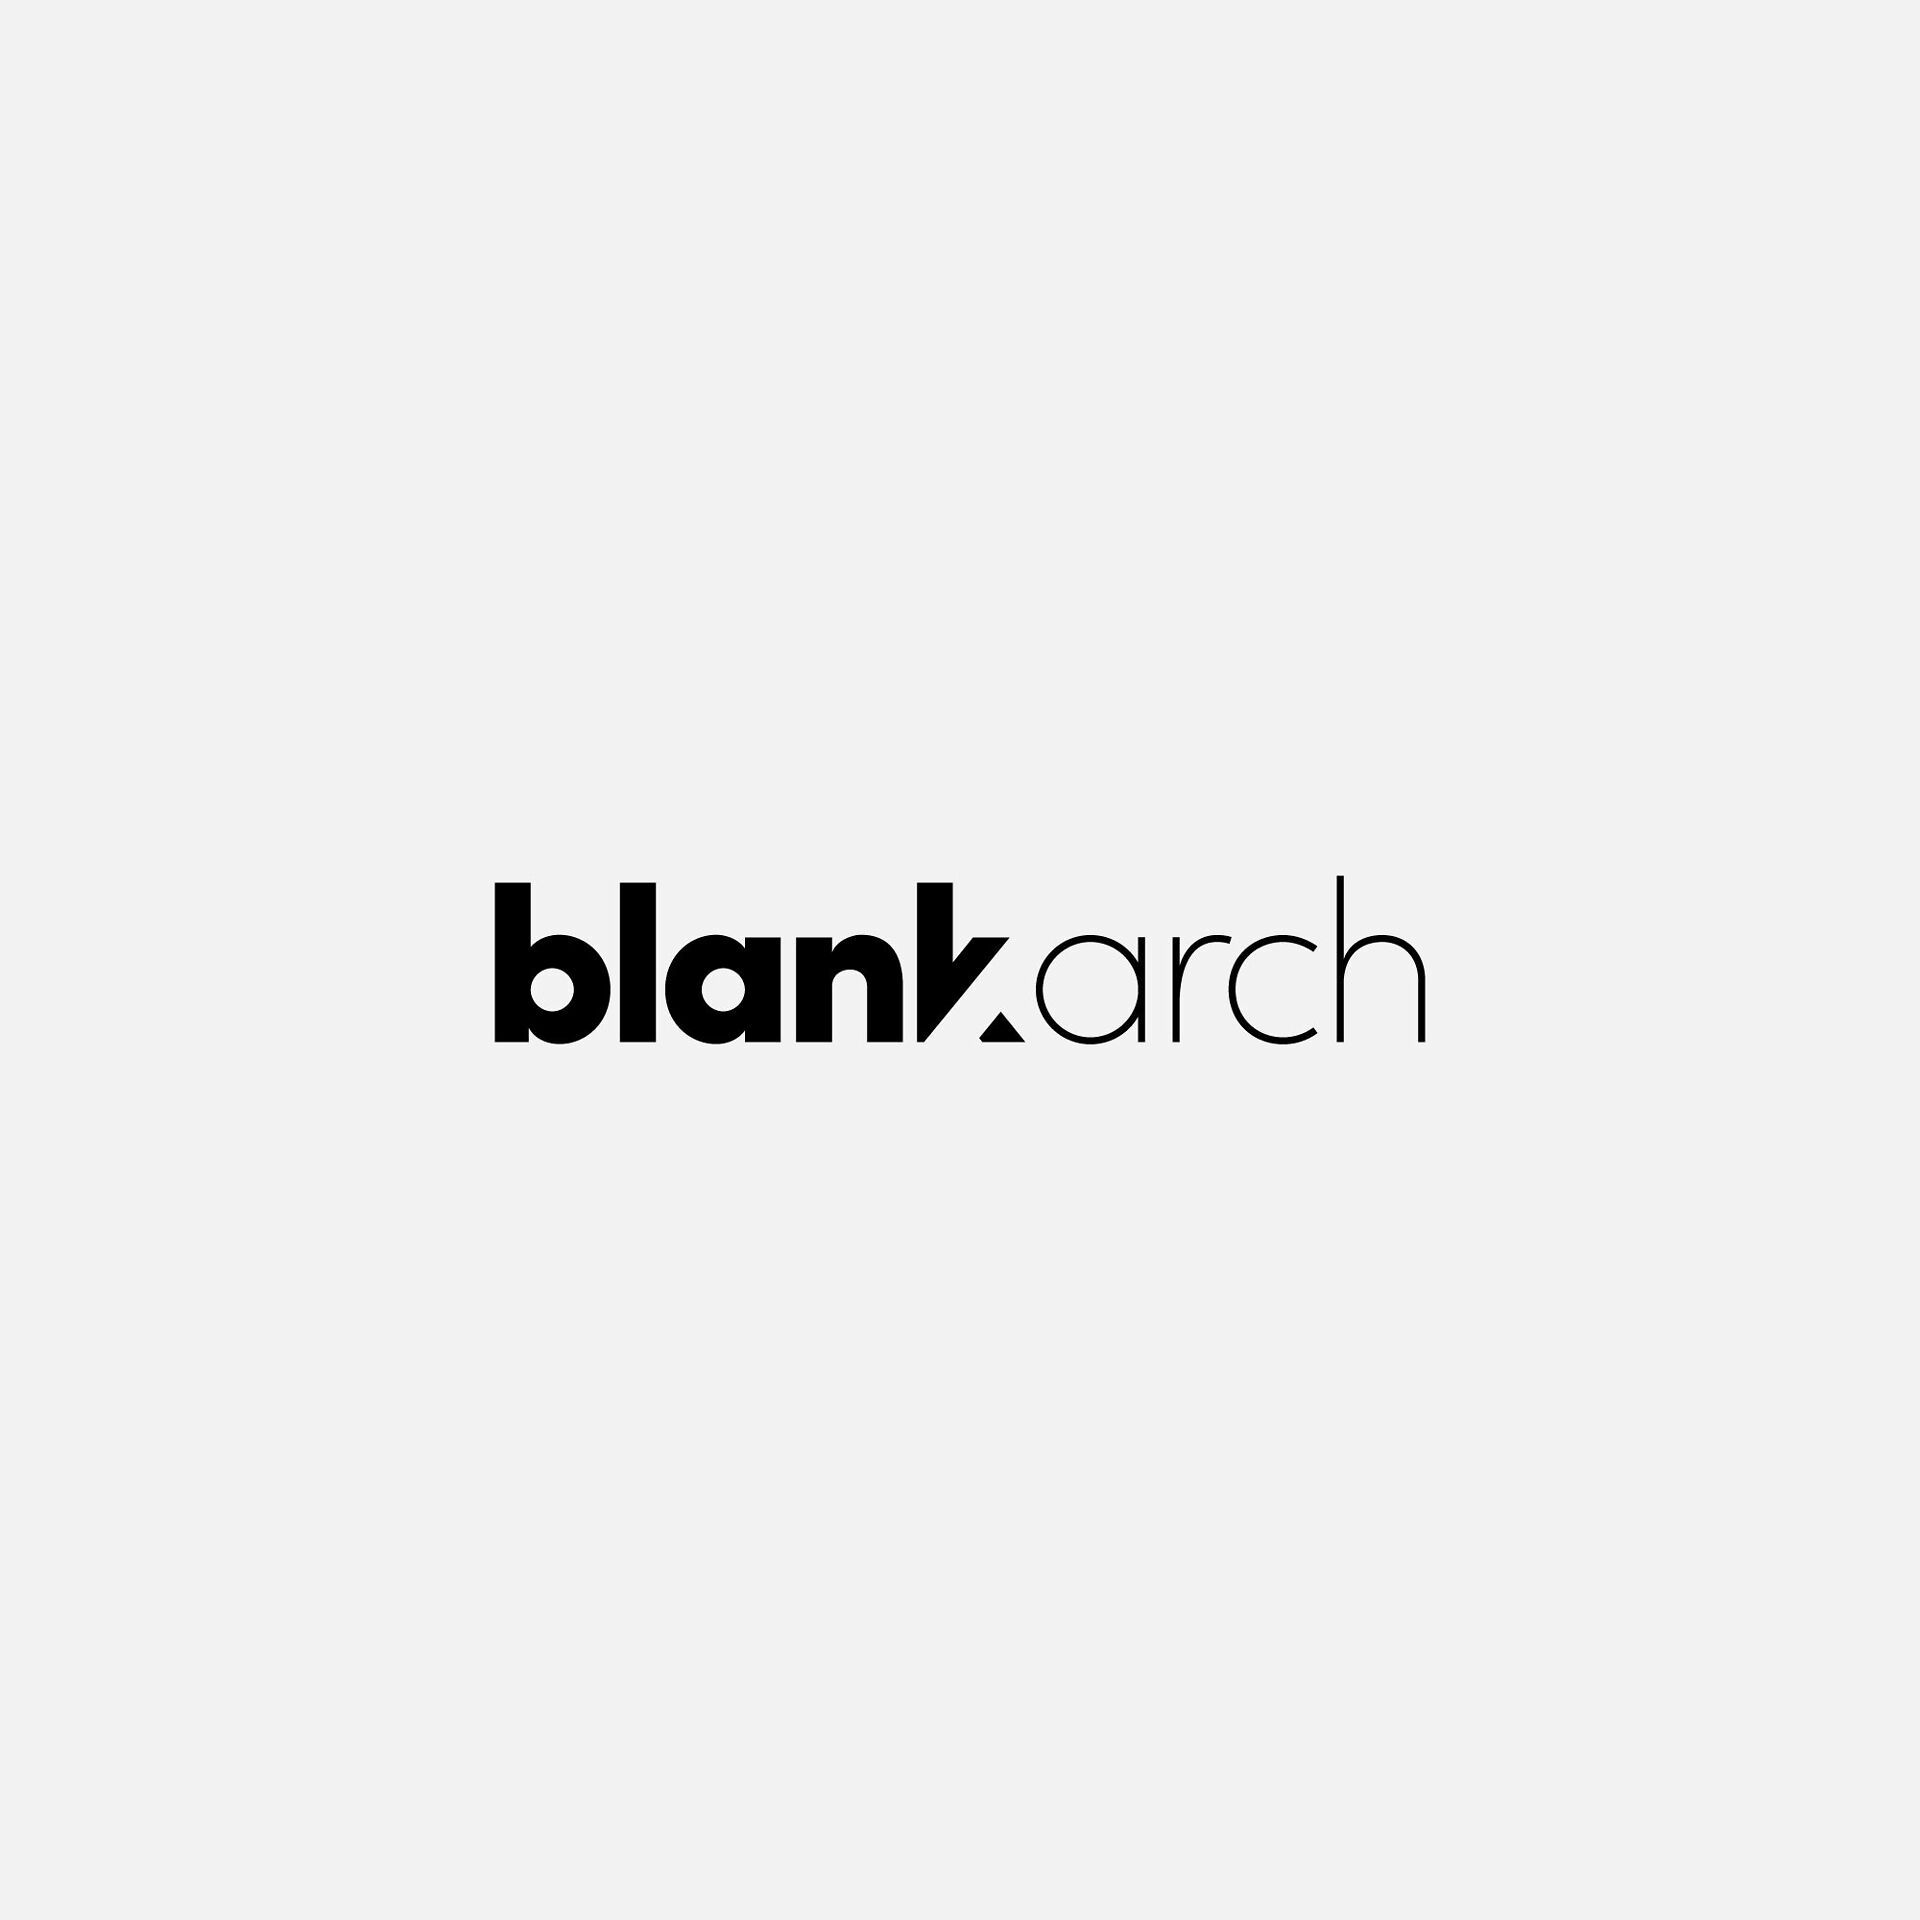 Logo Blankarch in nero